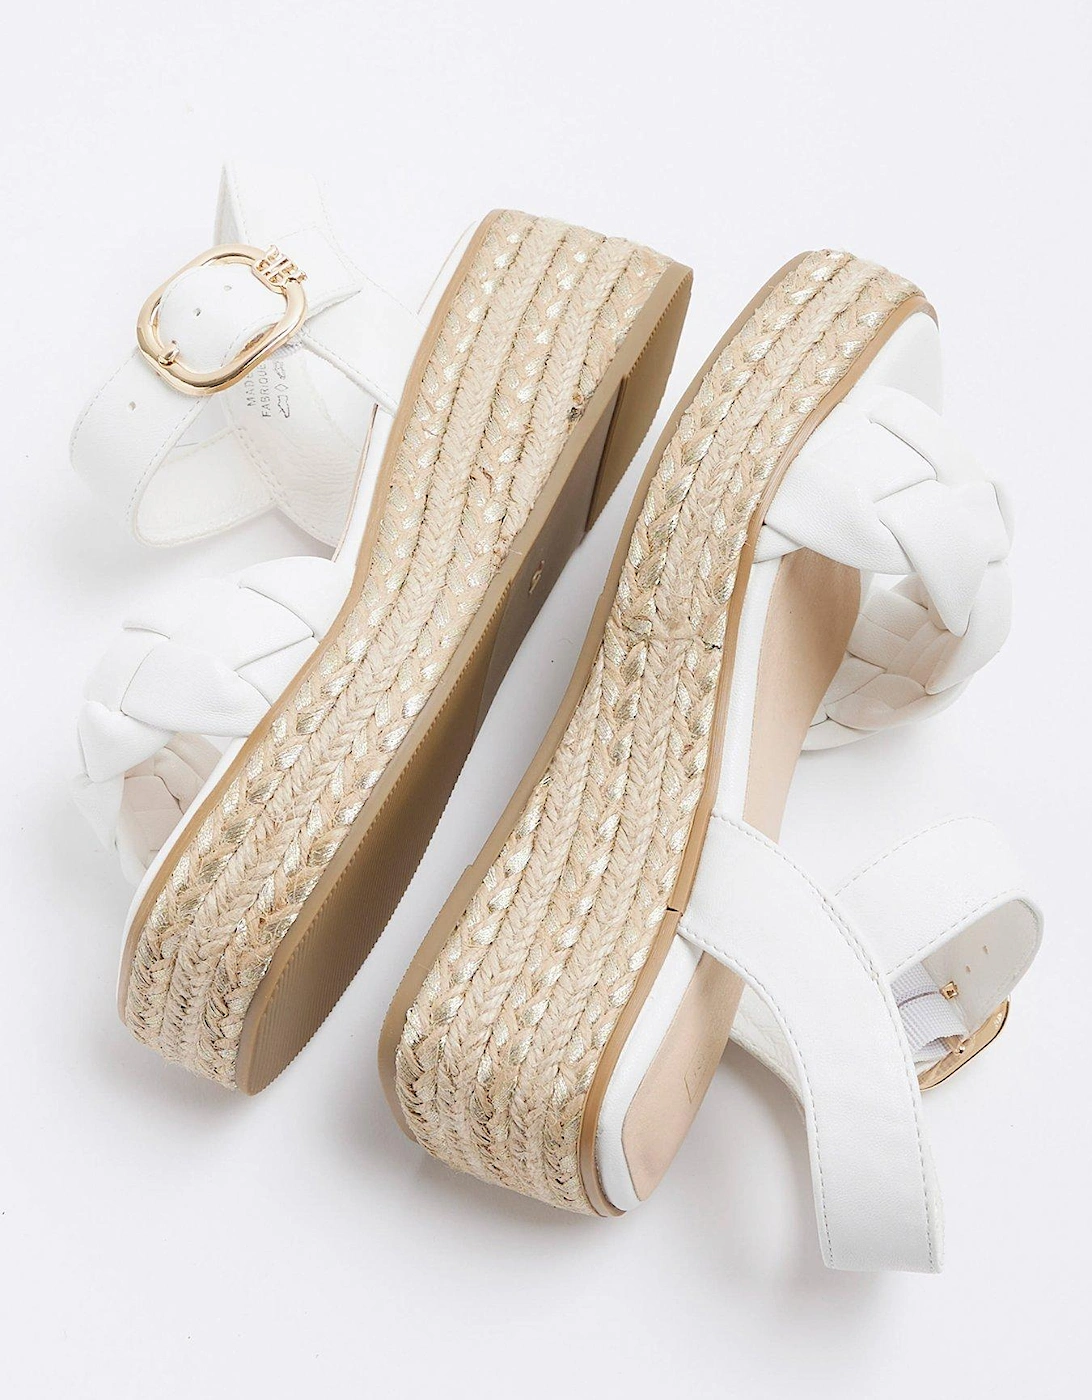 Girls Plait Strap Wedge Sandals - White